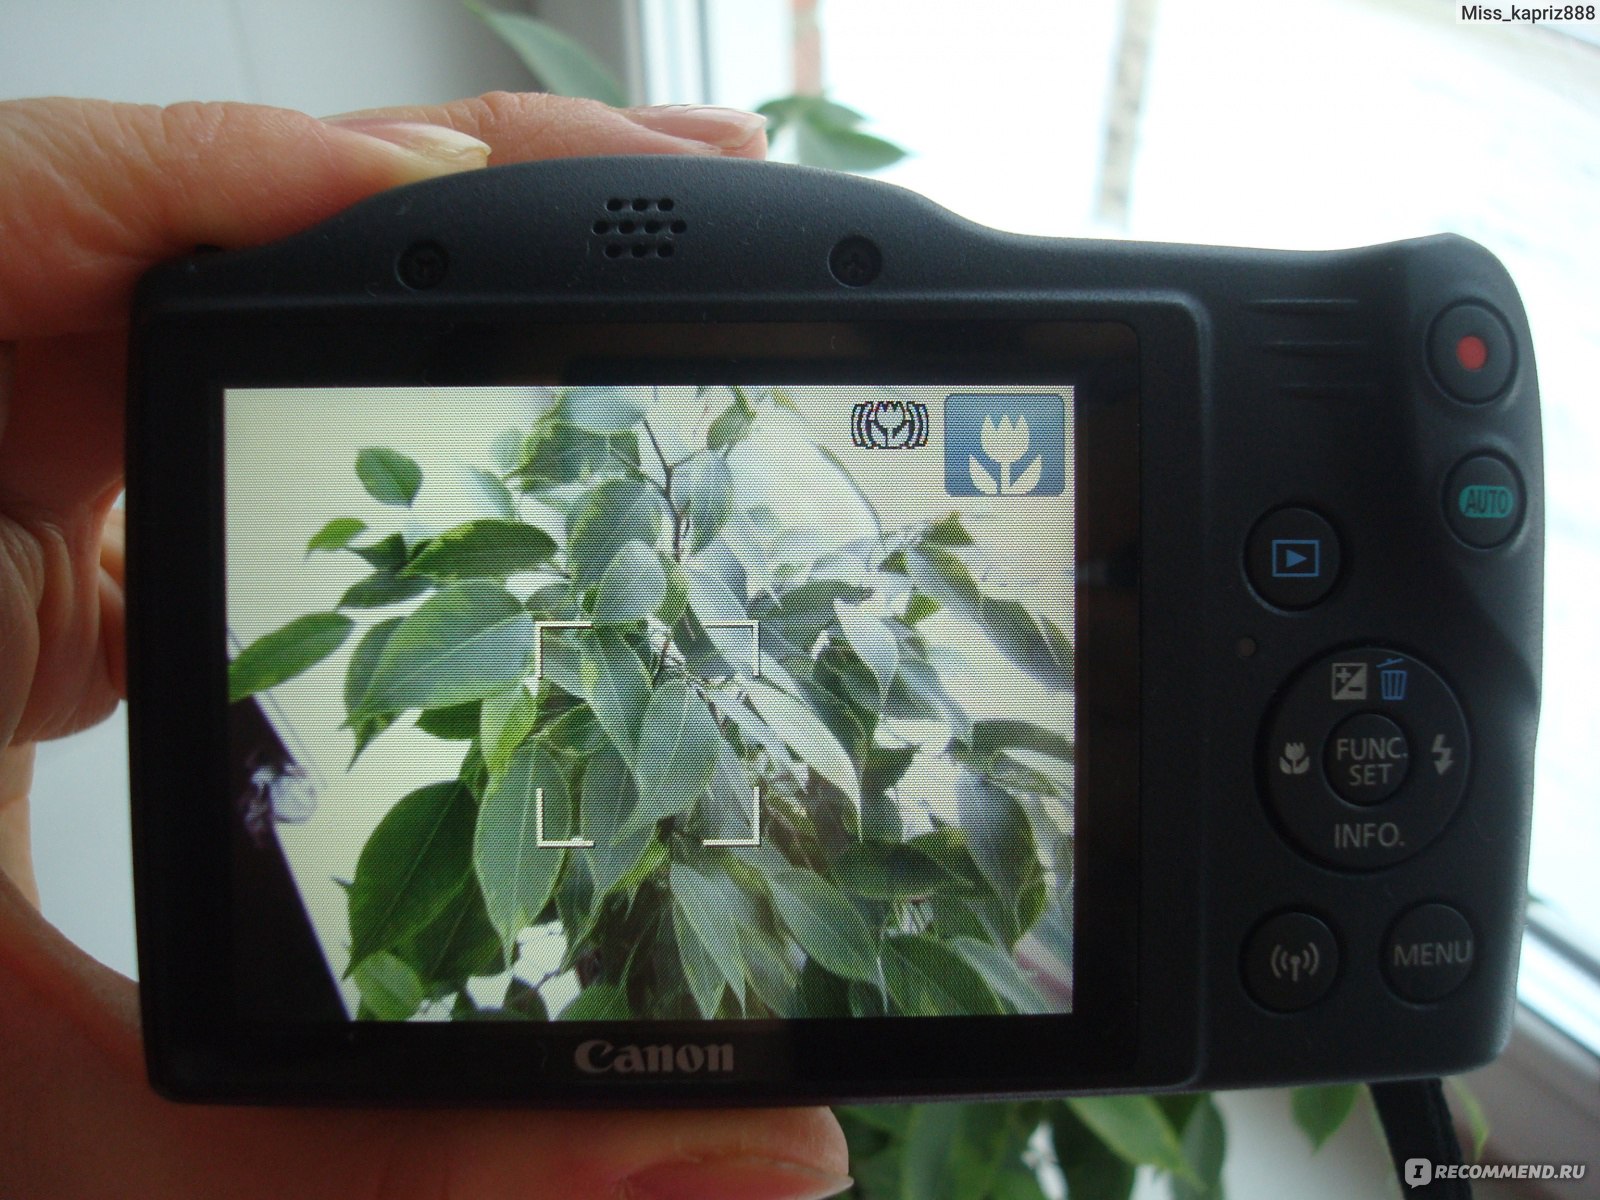 Canon Компактная камера PowerShot SX430 IS - «Достойная камера для  домашнего использования. Разбор режимов. Много ФОТО: пейзажи, макро и мой  эксперимент» | отзывы